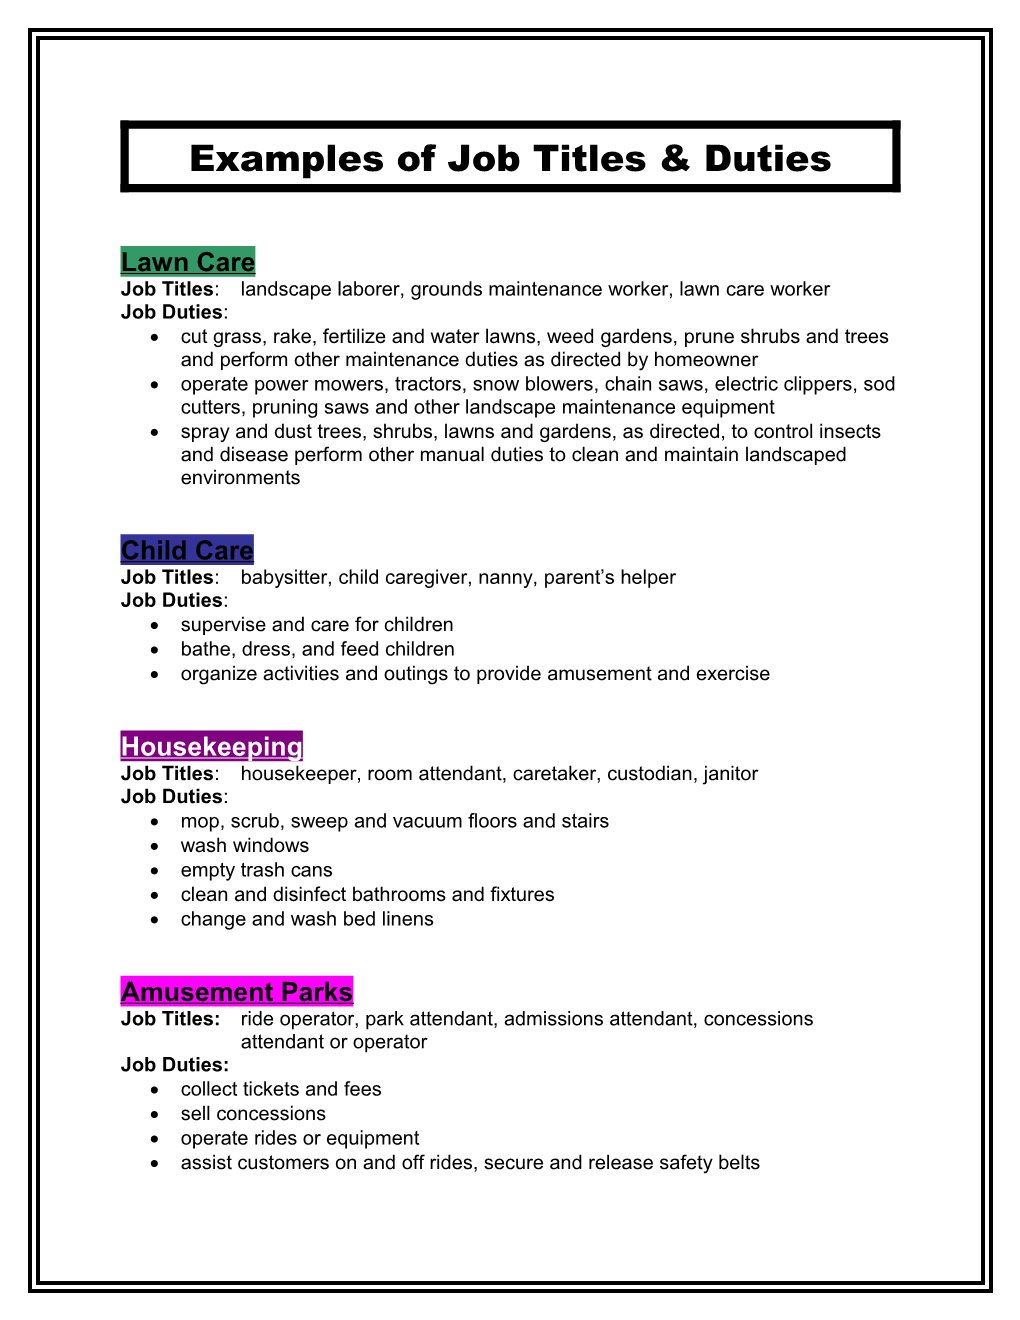 Examples of Job Titles & Duties